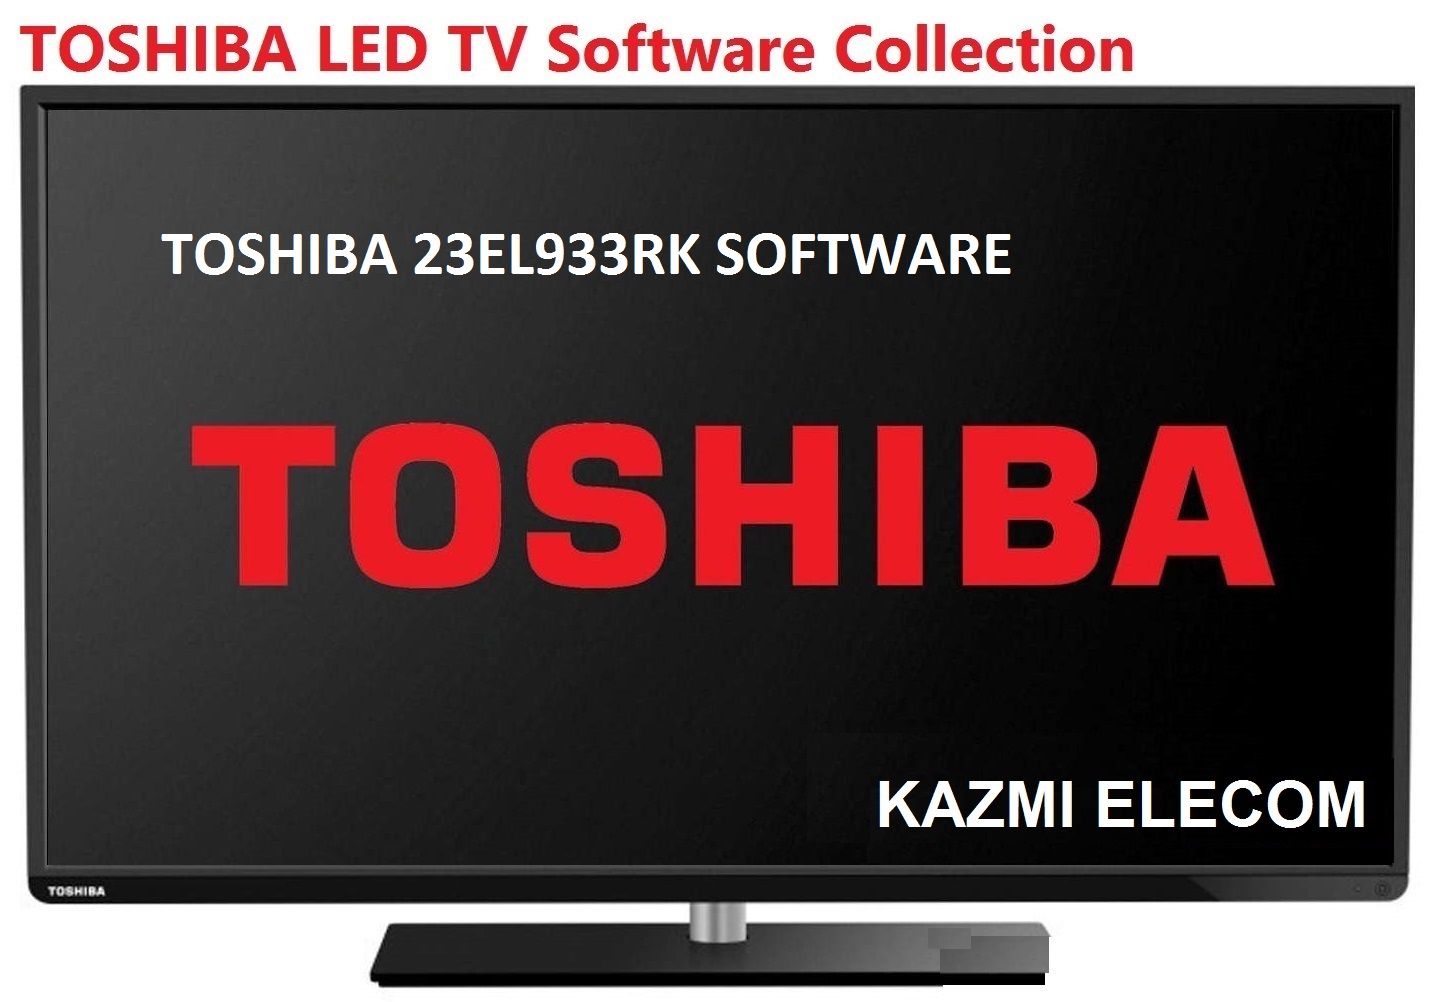 Toshiba 23El933Rk